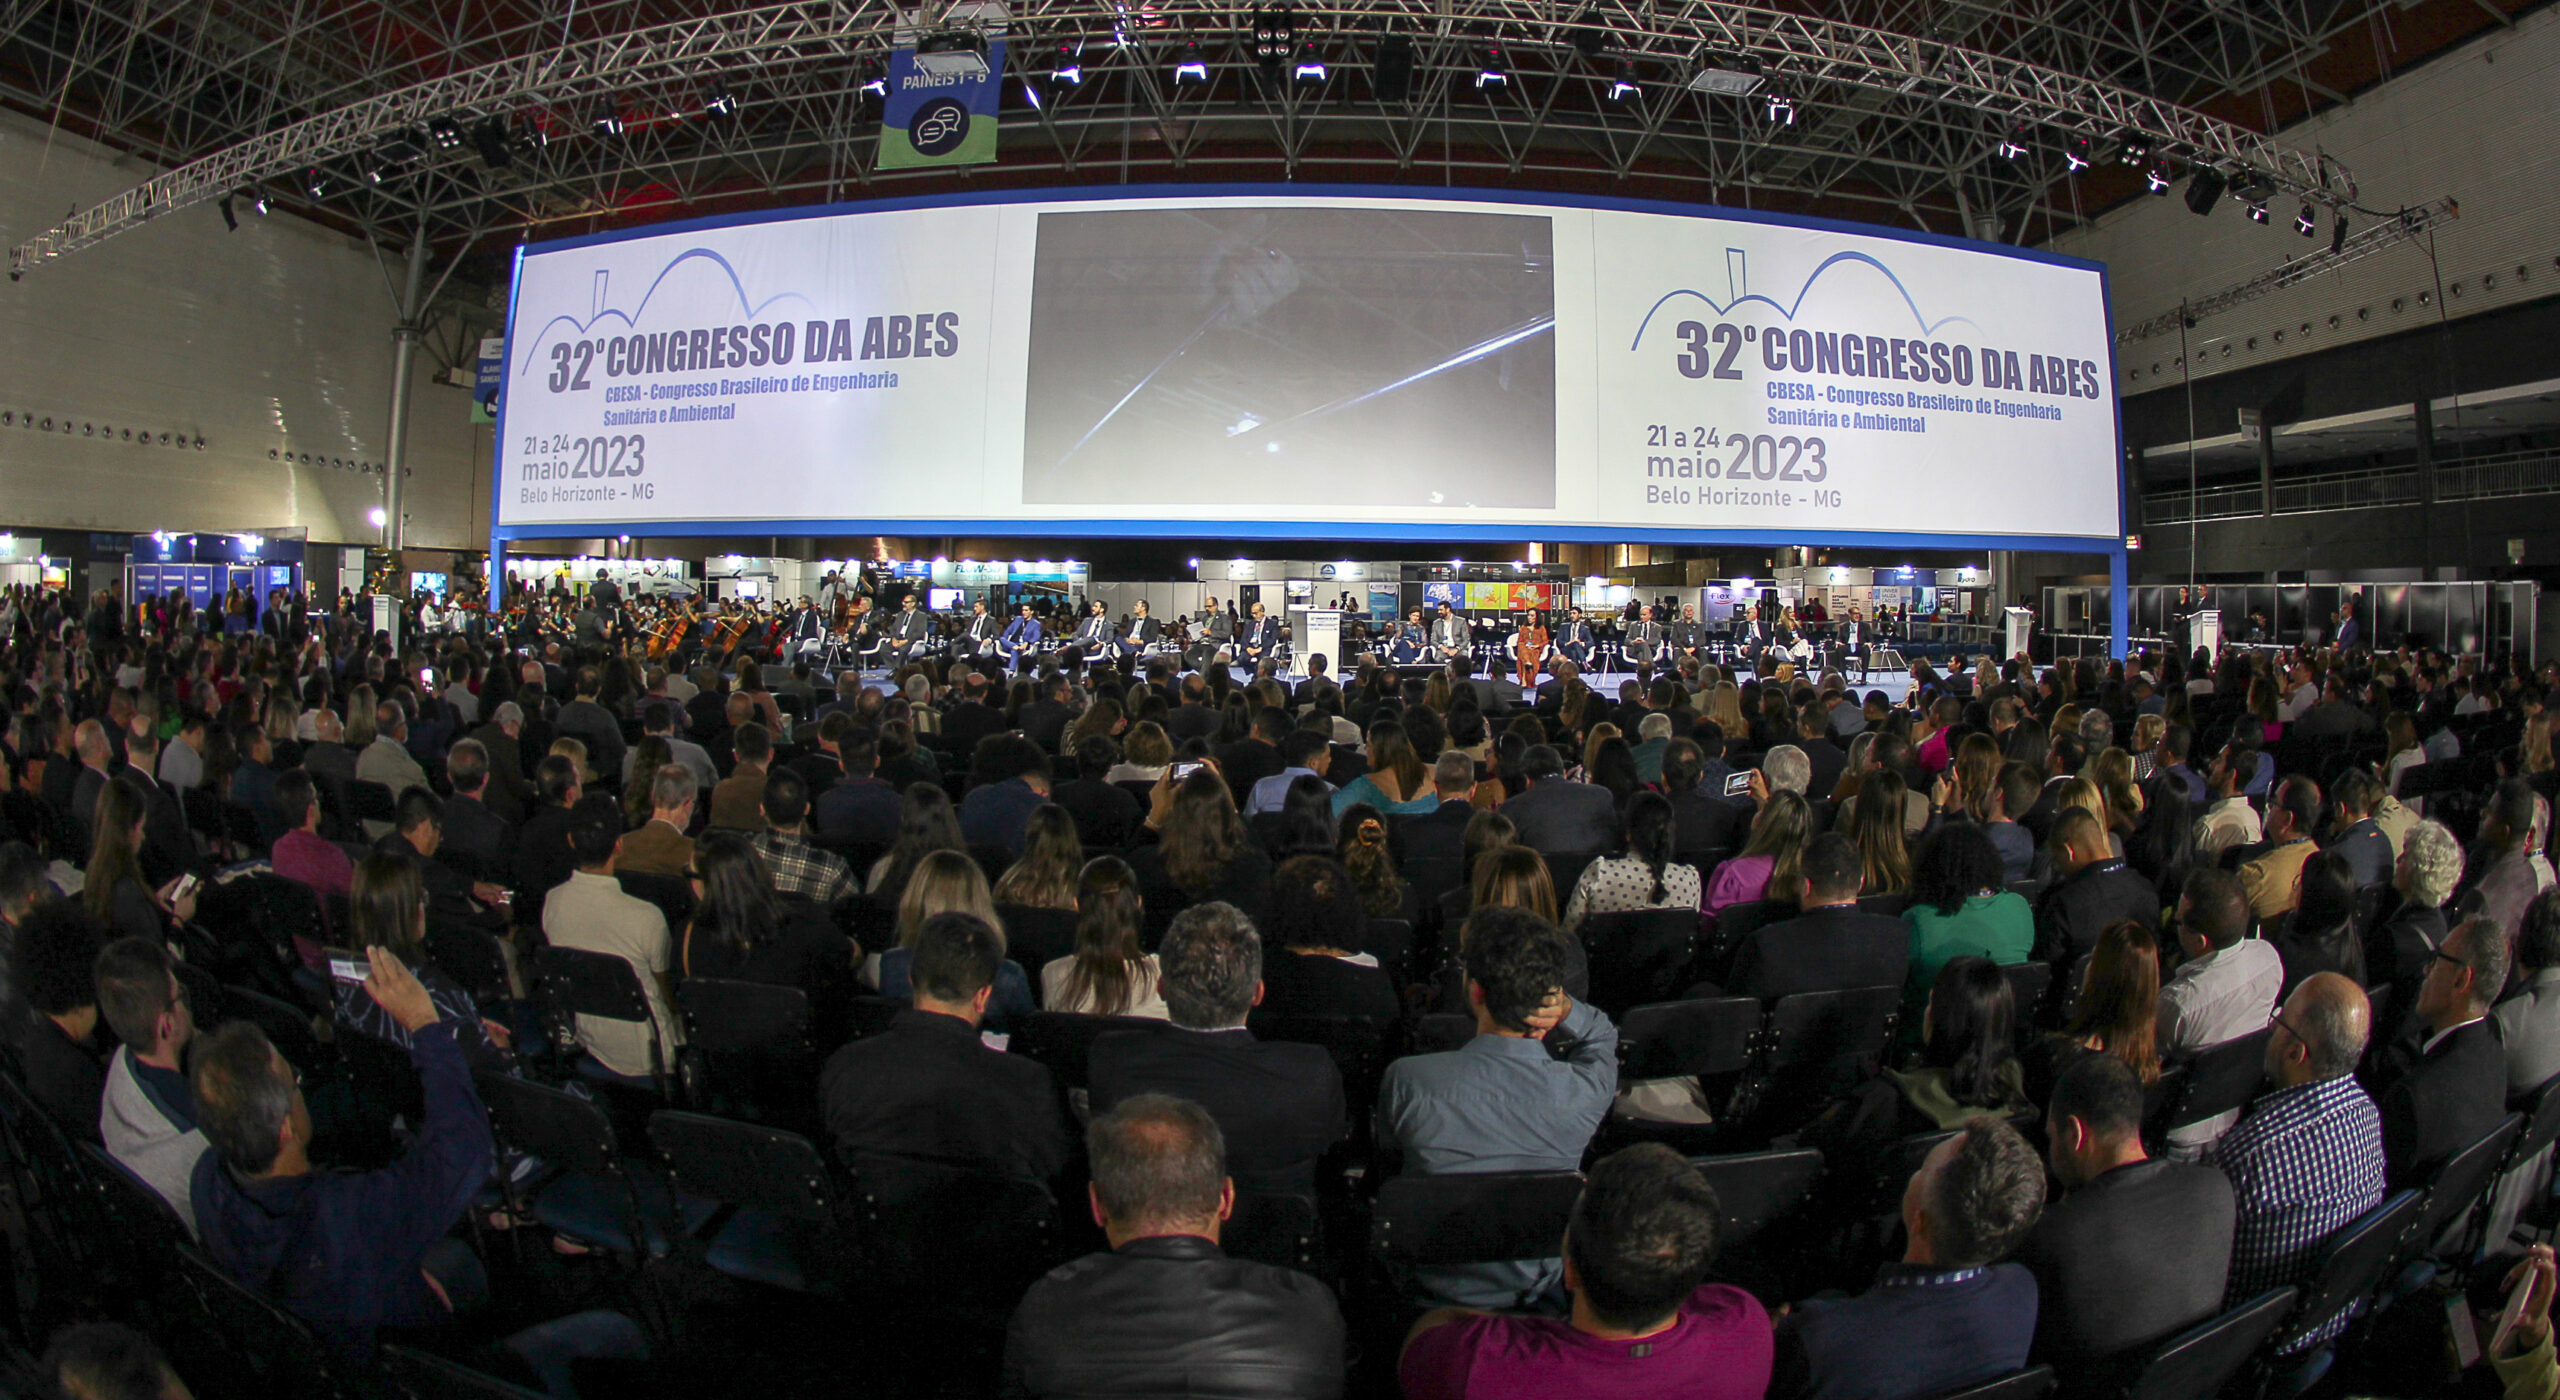 Confira o álbum de fotos do Congresso da ABES em Belo Horizonte